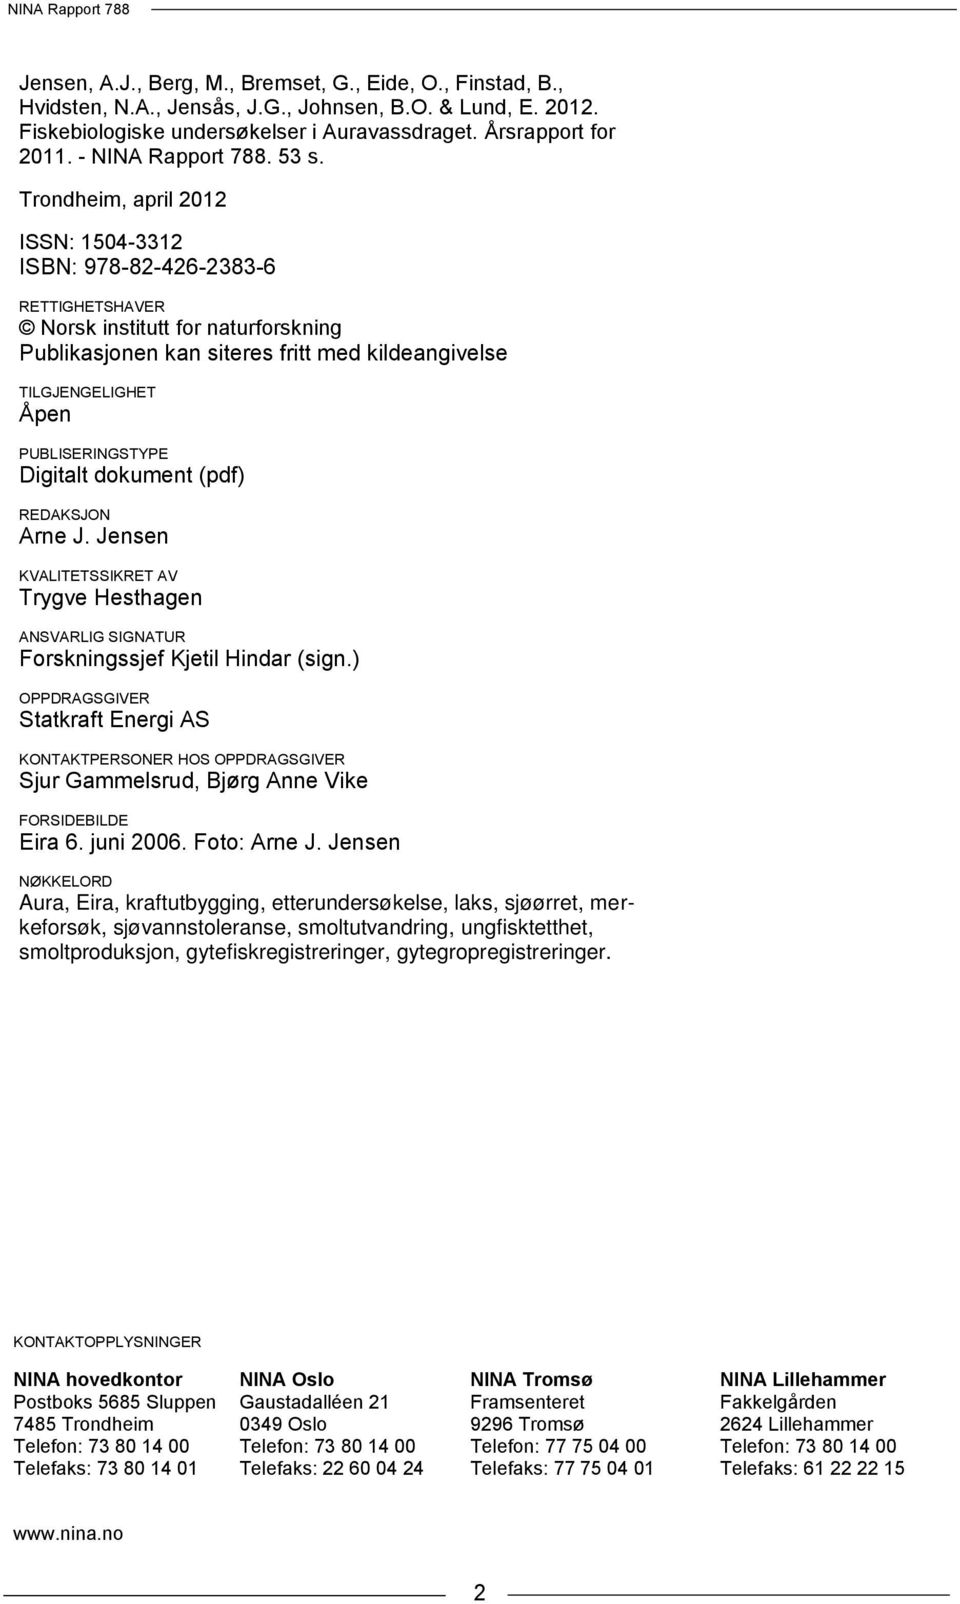 Trondheim, april 12 ISSN: 154-3312 ISBN: 978-82-426-2383-6 RETTIGHETSHAVER Norsk institutt for naturforskning Publikasjonen kan siteres fritt med kildeangivelse TILGJENGELIGHET Åpen PUBLISERINGSTYPE